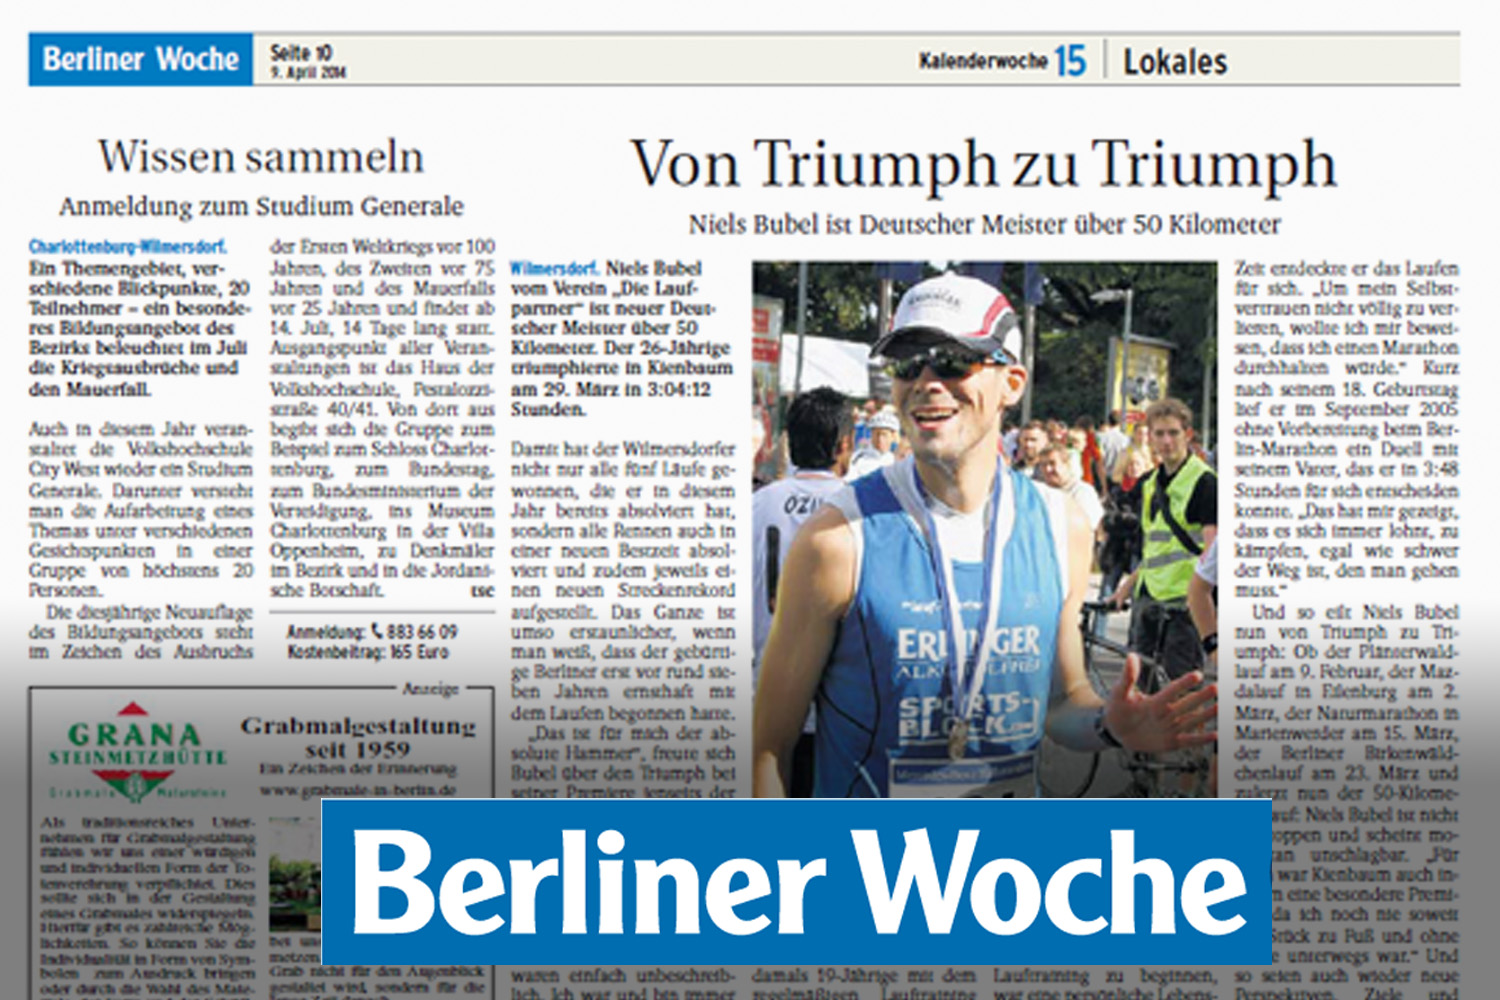 Berliner Woche - Von Triumph zu Triumph - Niels Bubel ist Deutscher Meister über 50 Kilometer